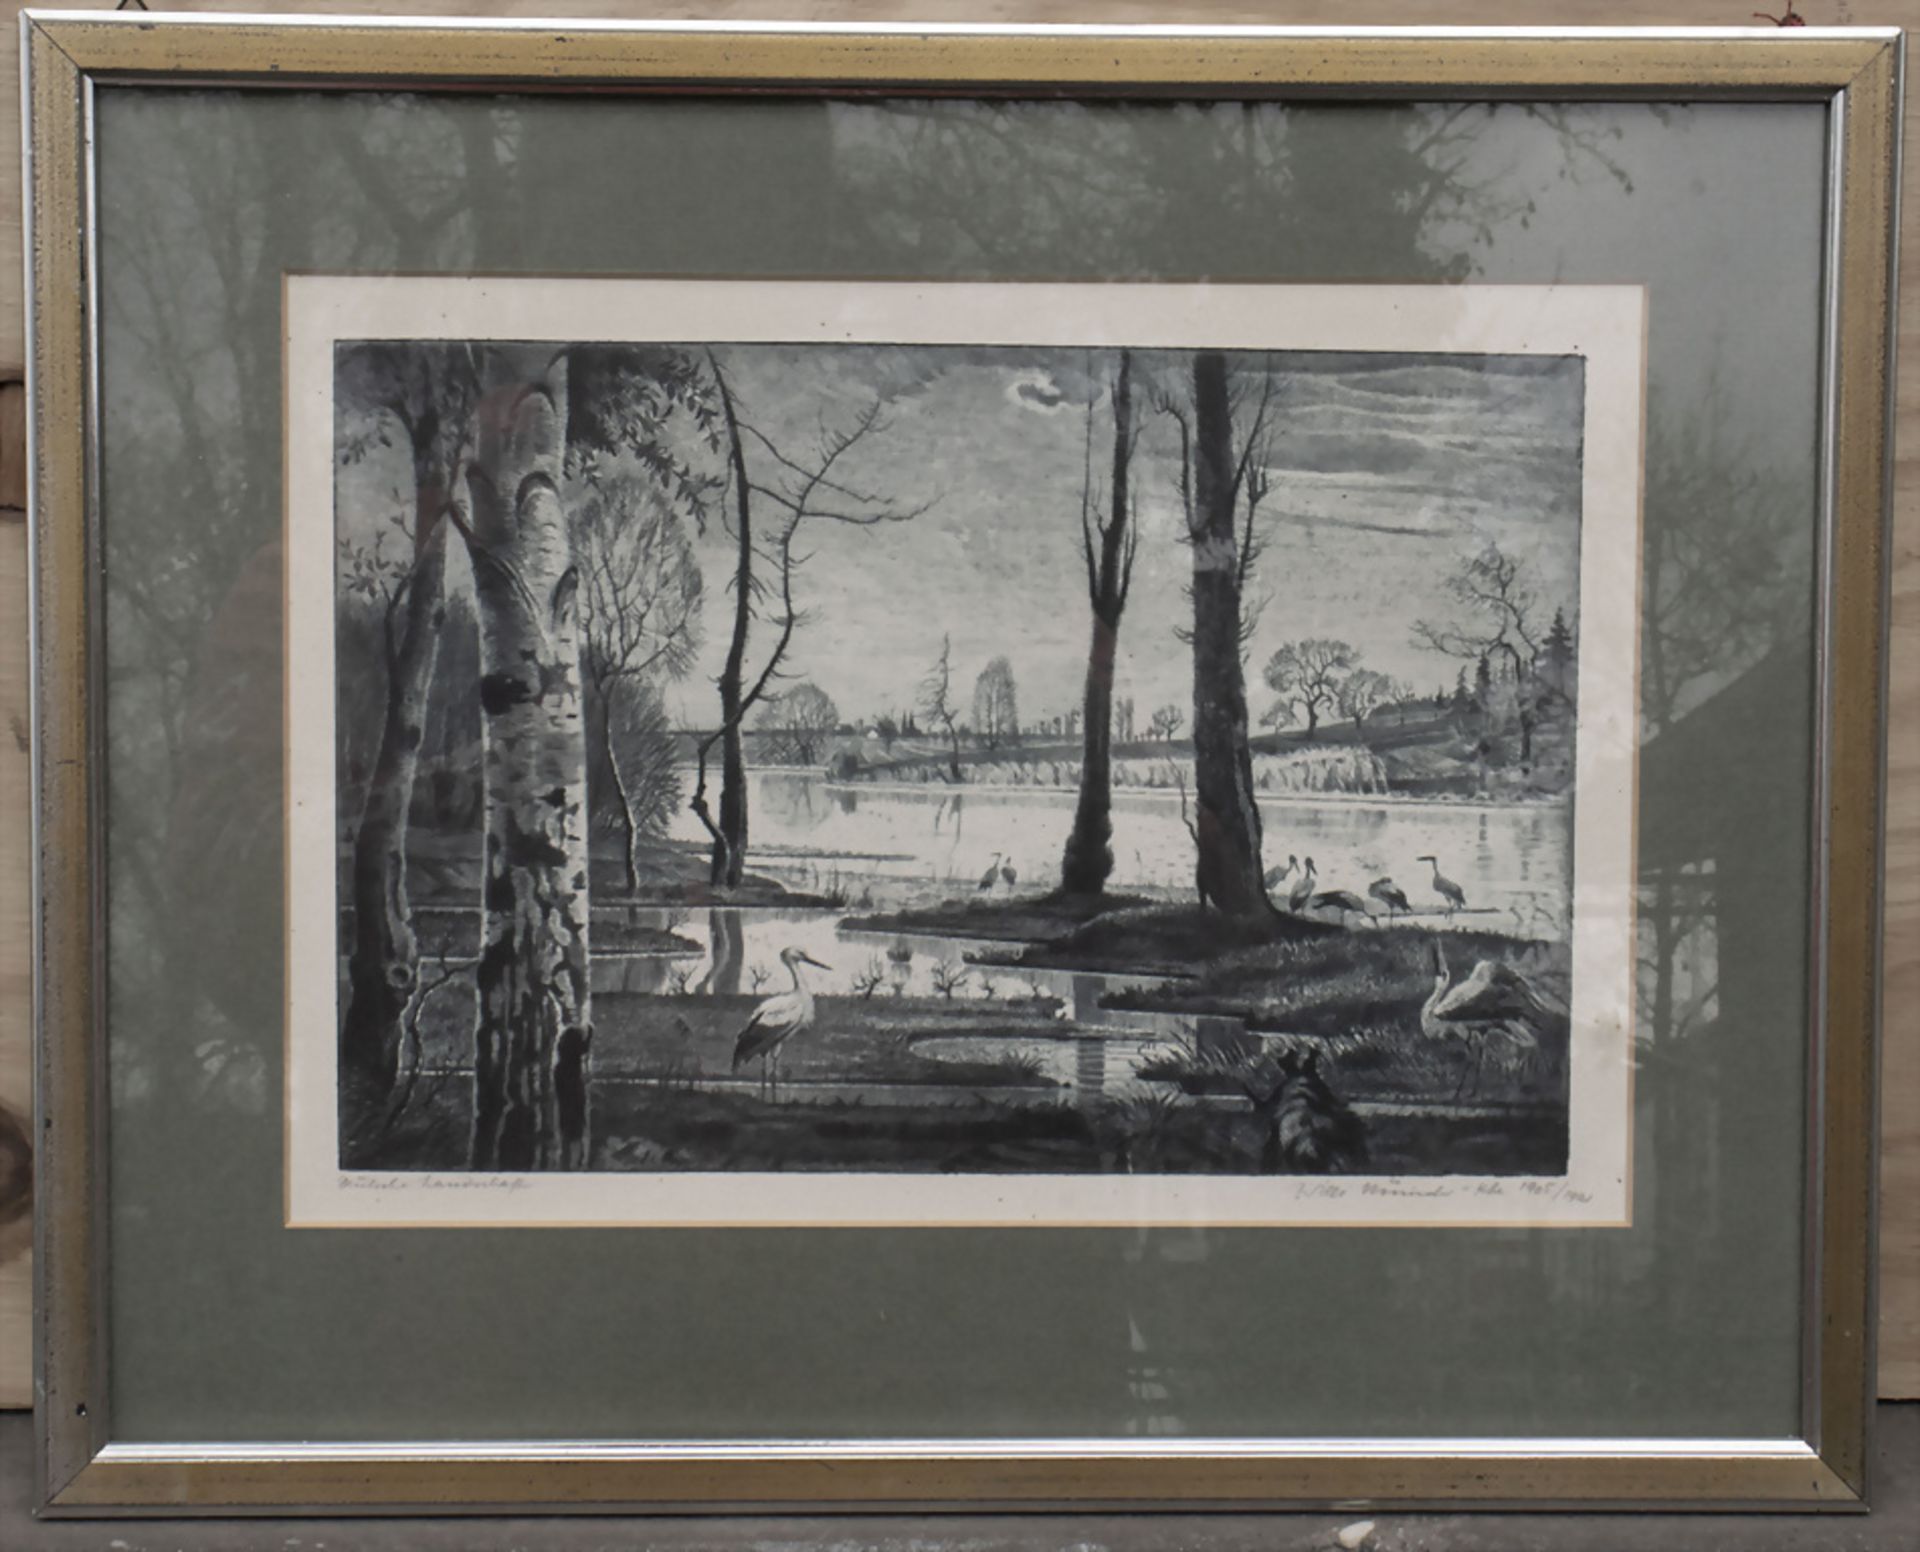 Willi MÜNCH-K'HE (1885-1960), 'Deutsche Landschaft' / 'German landscape' - Bild 2 aus 6